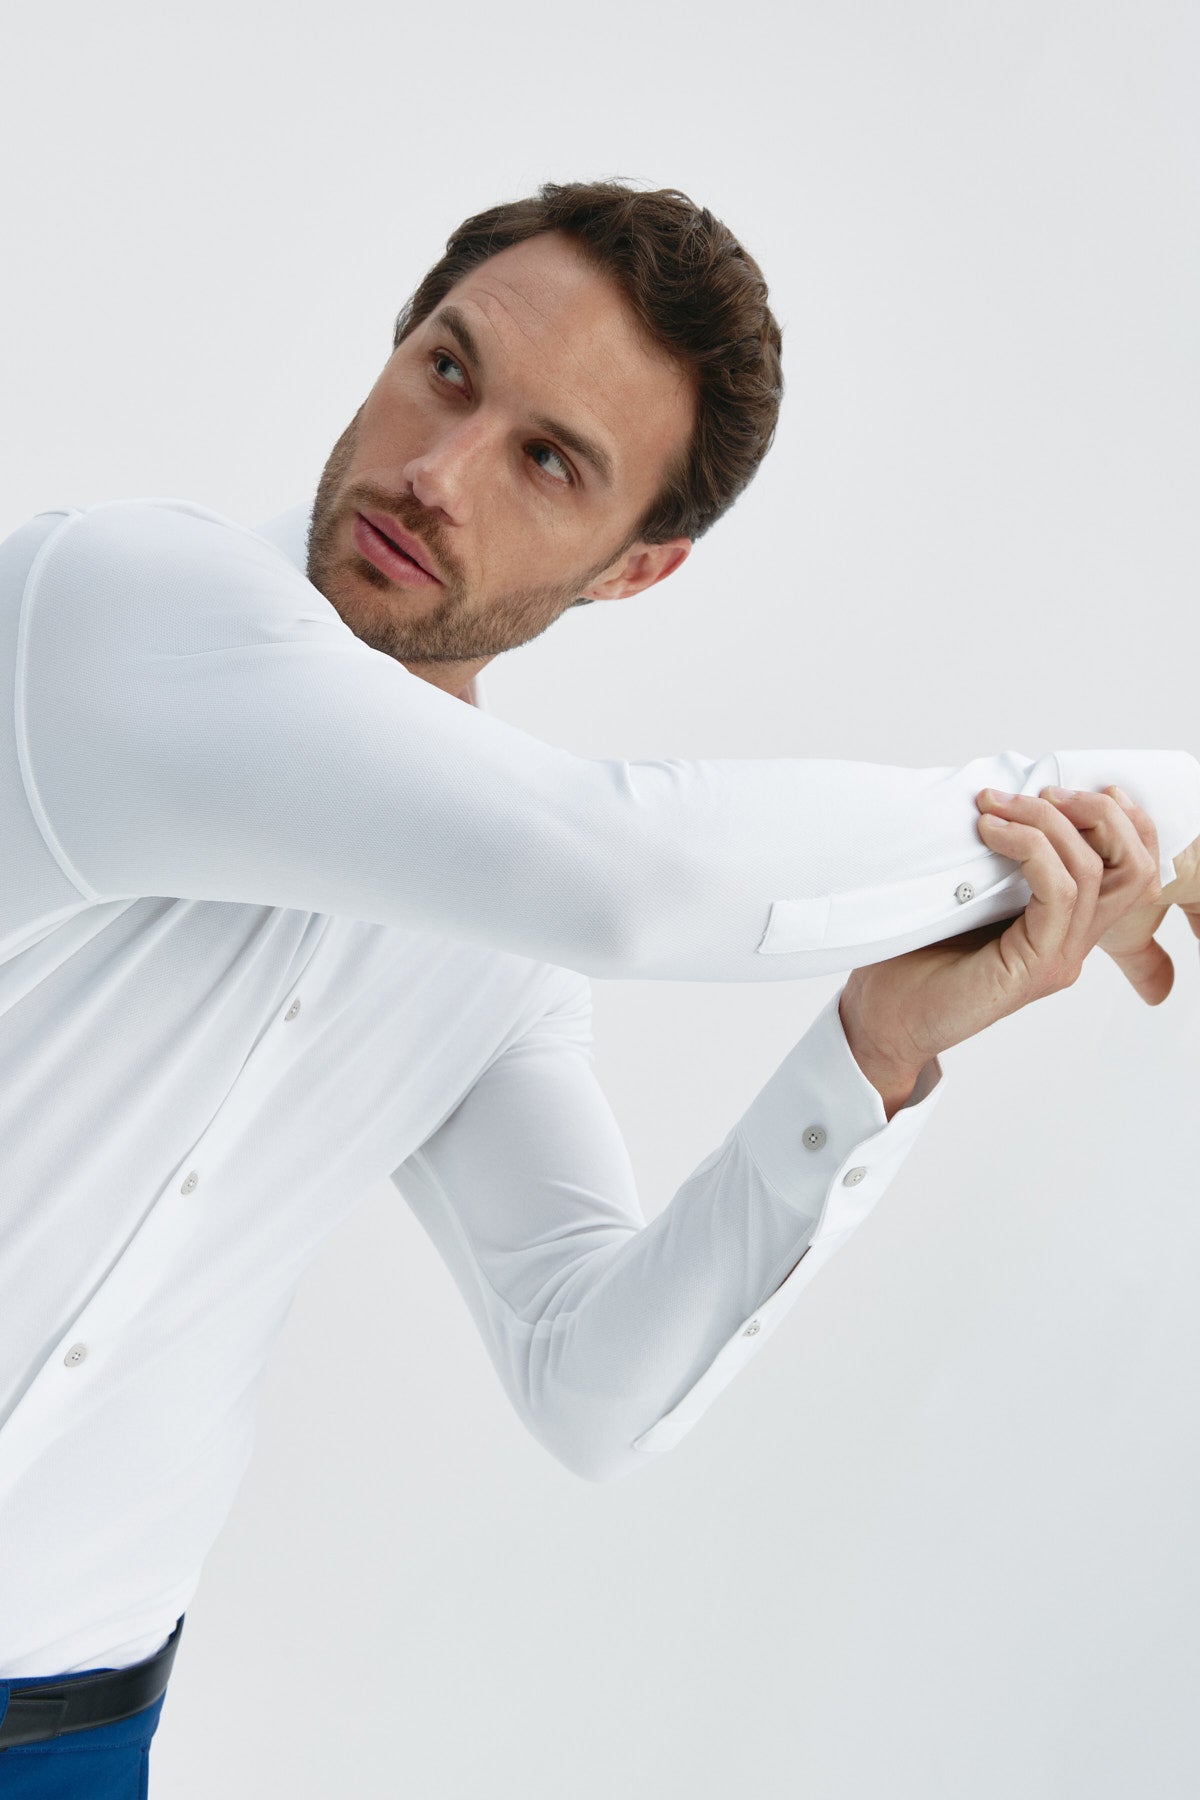 Camisa de vestir blanca de manga larga slim para hombre Sepiia: Camisa de vestir blanca de manga larga slim para hombre sin arrugas, antimanchas, perfecta para traje o americana. Foto flexibilidad.